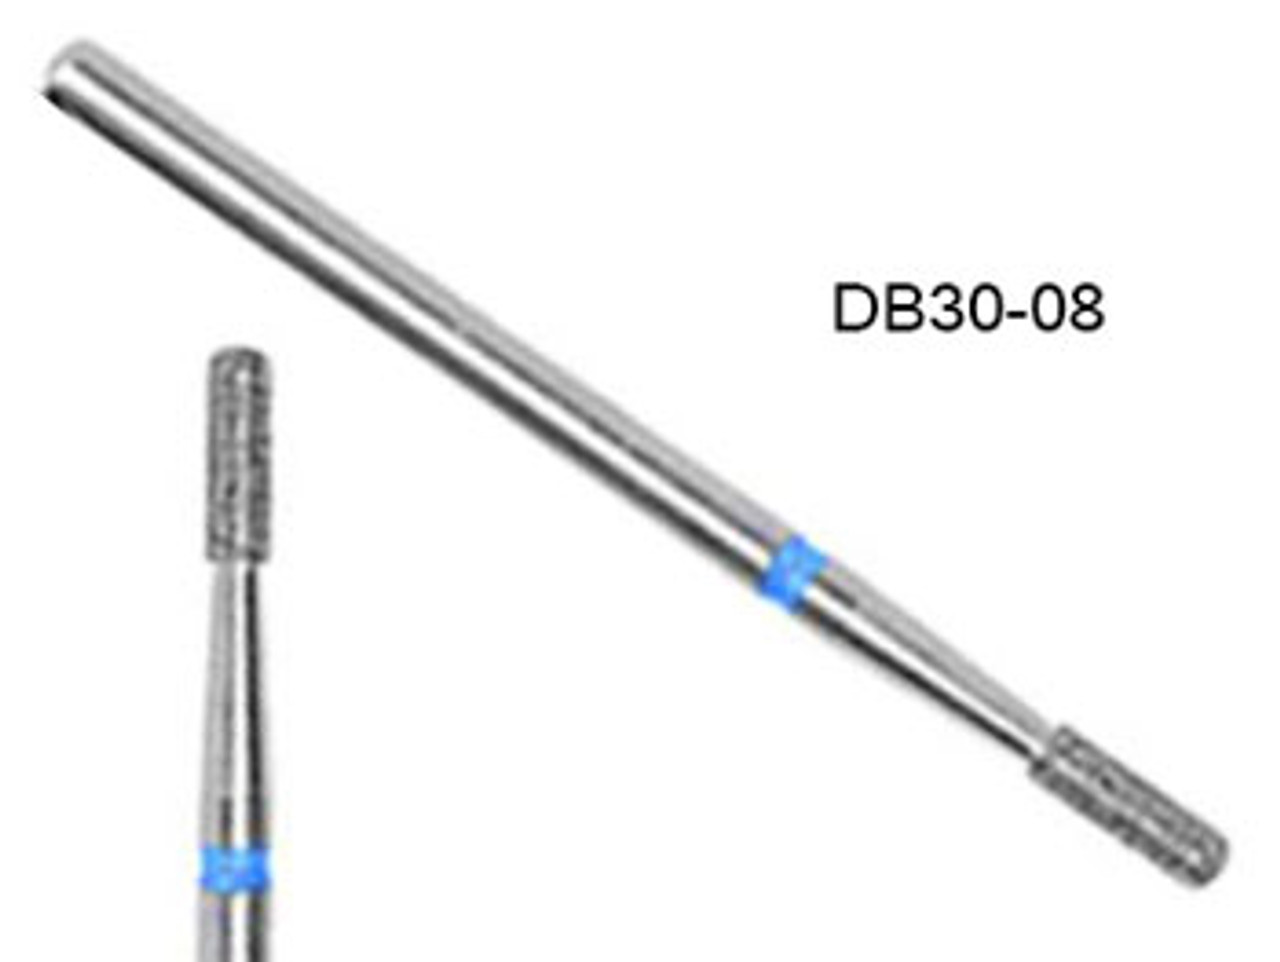 NDi beauty Diamond Carbide Bit Cylinder Shape - 3/32" - DB30